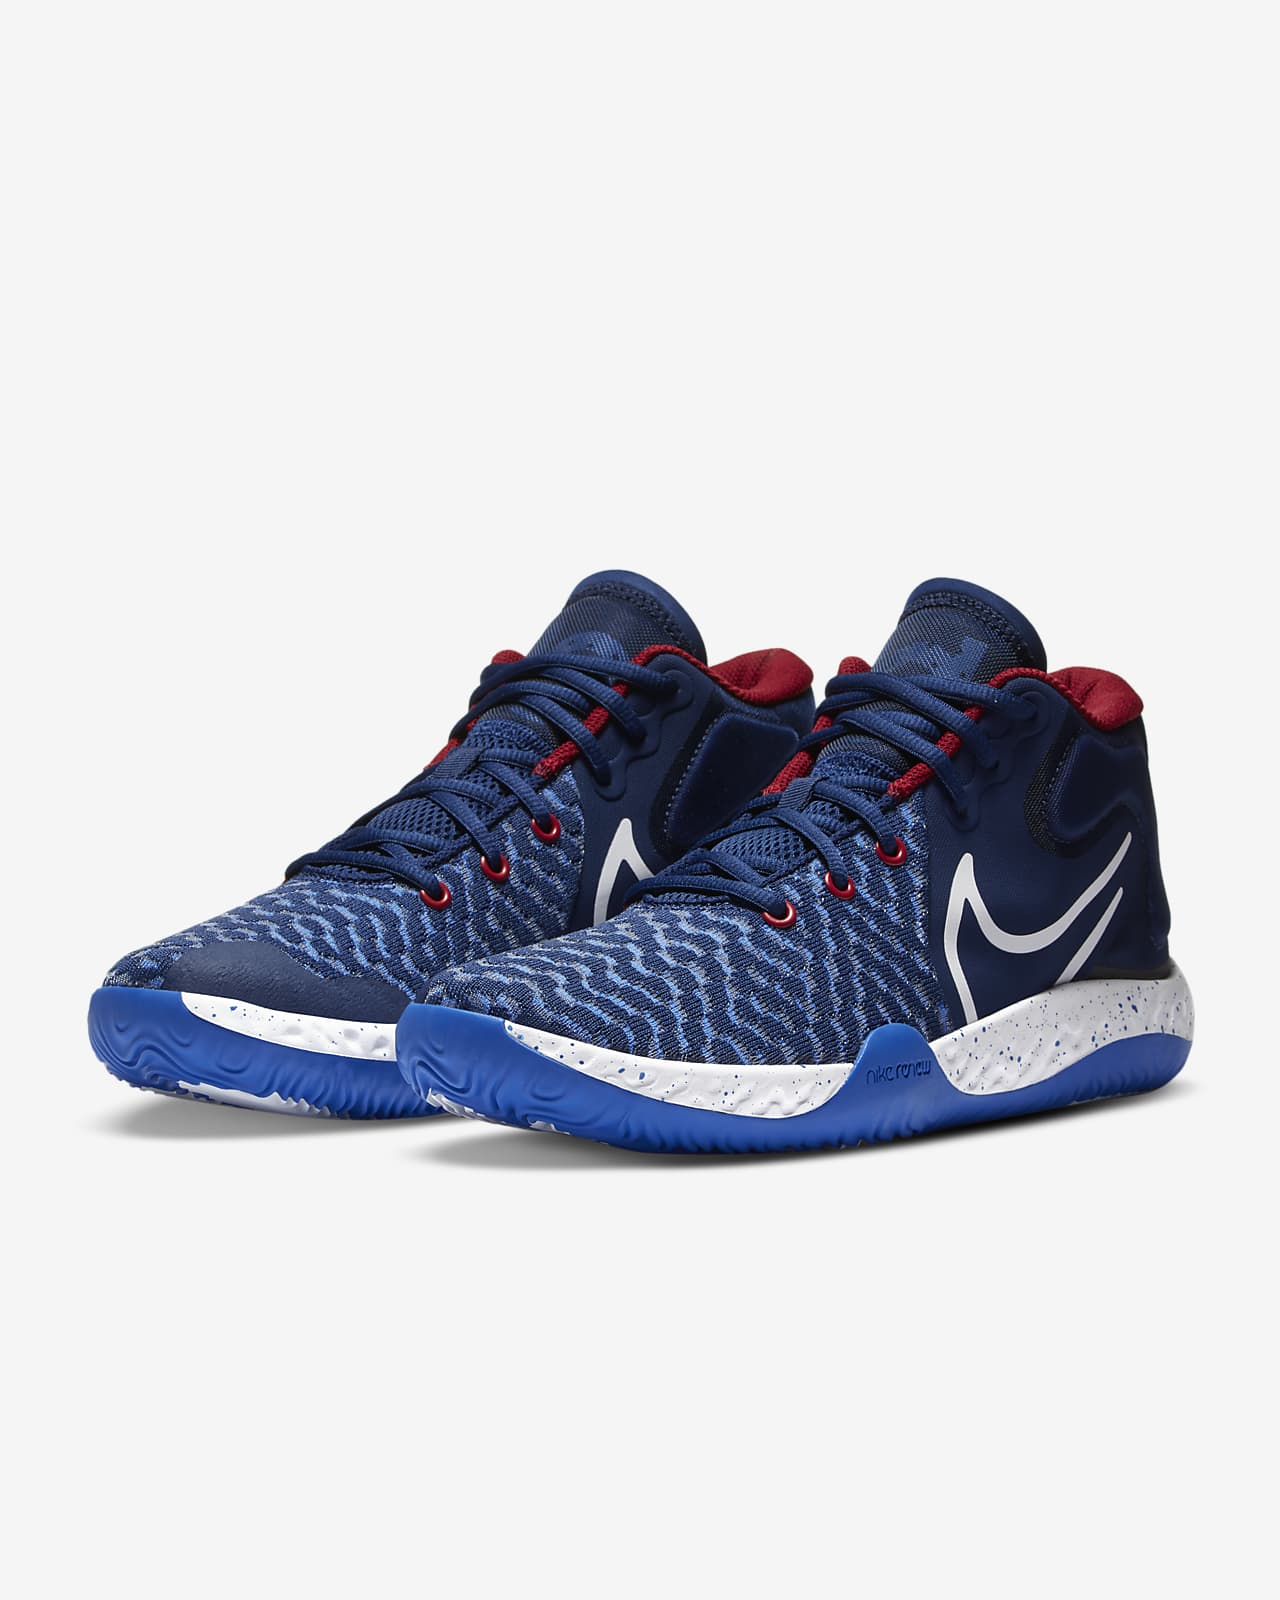 KD Trey 5 VIII Basketball Shoe. Nike CZ